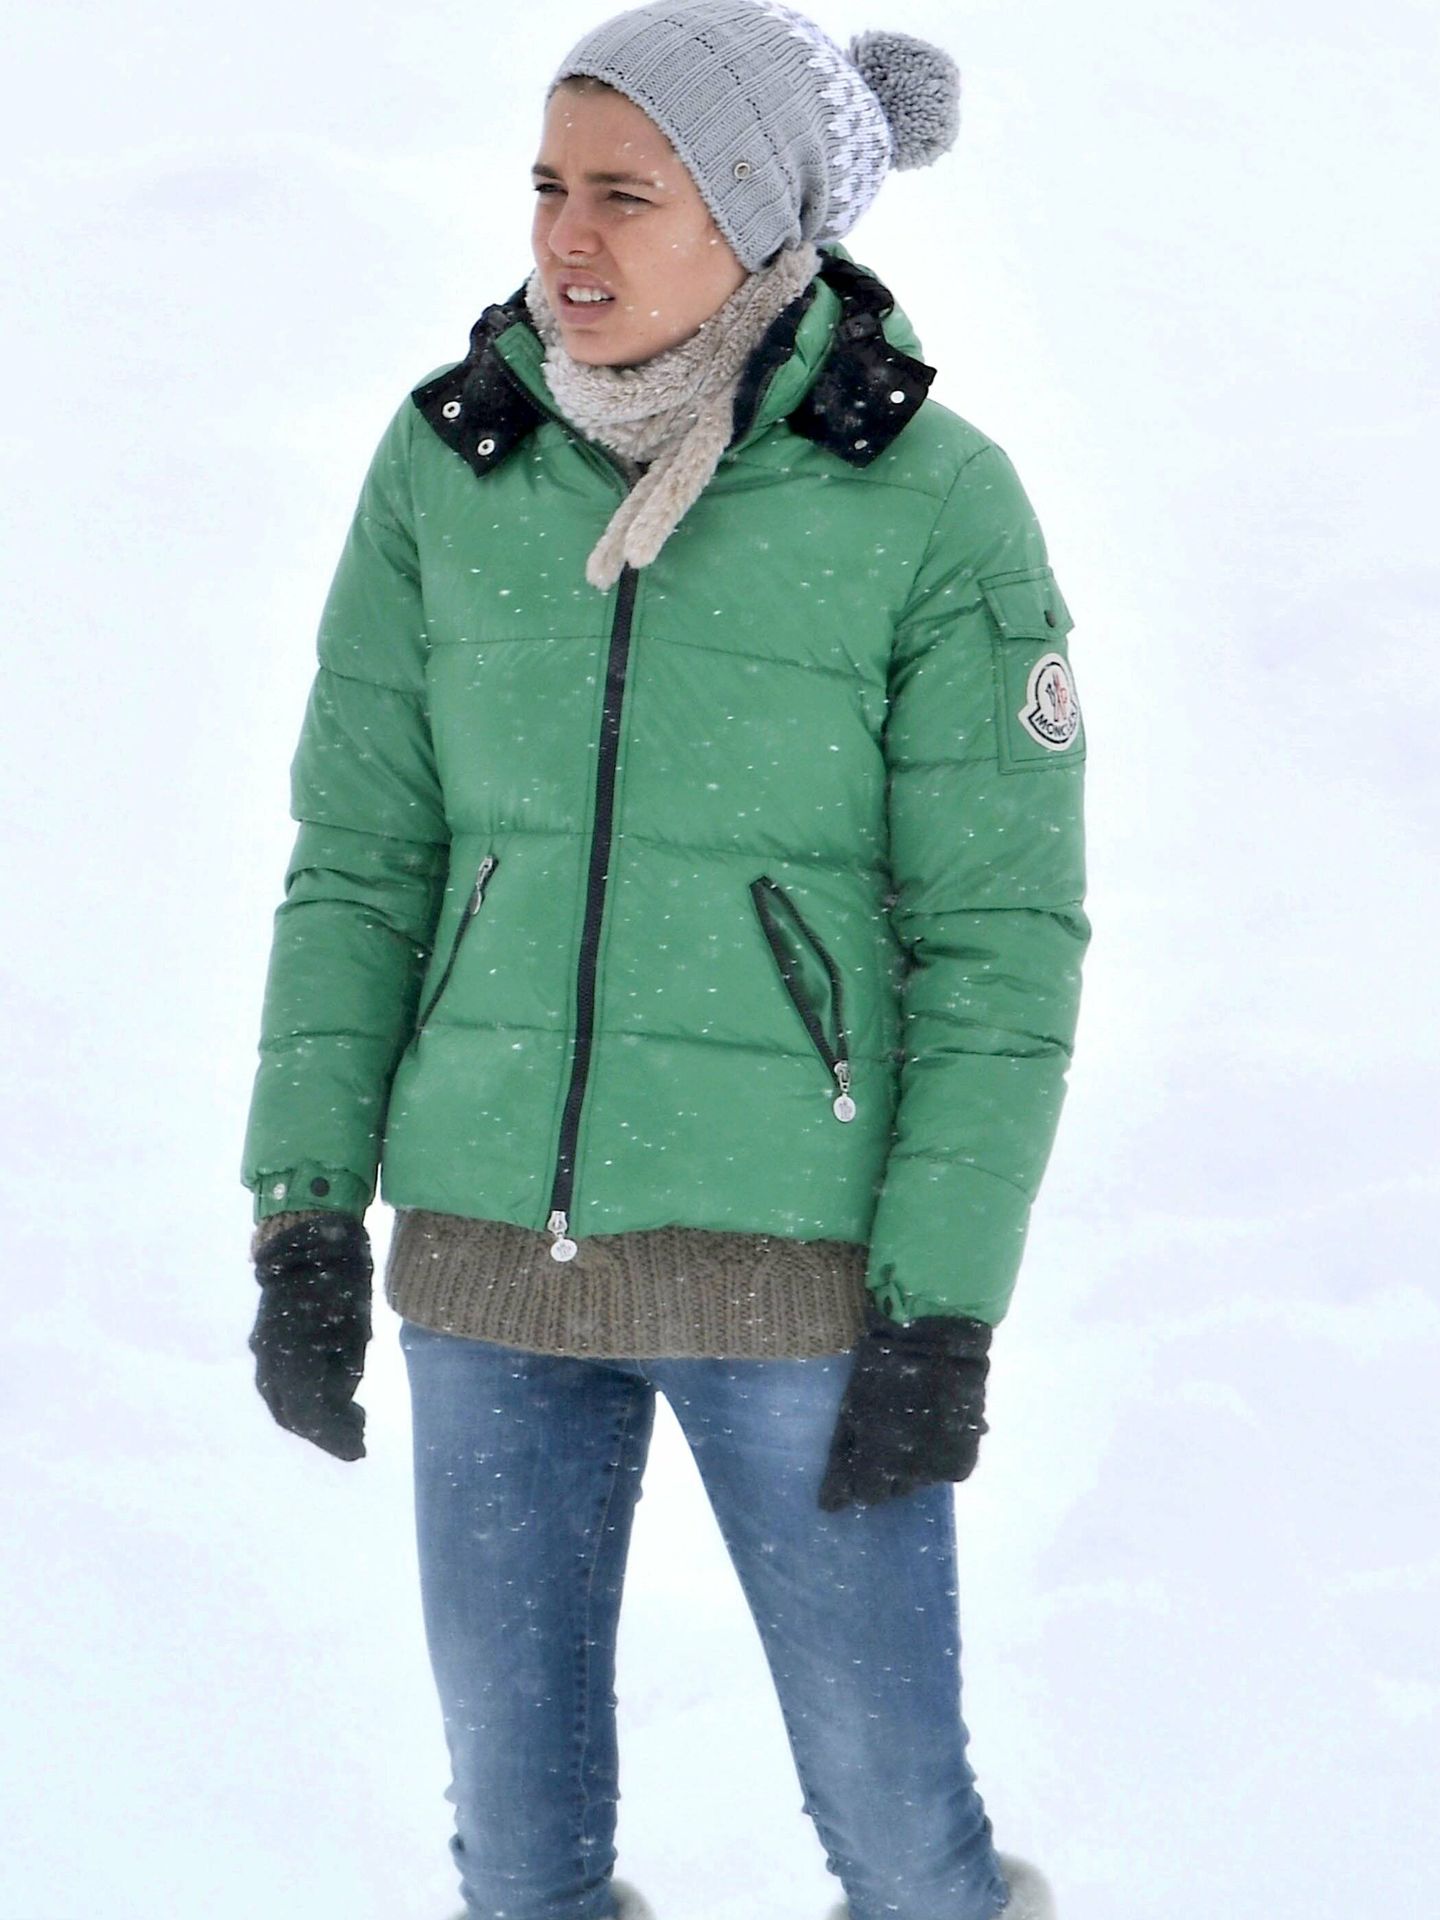 Carlota Casiraghi en la nieve. (CP)